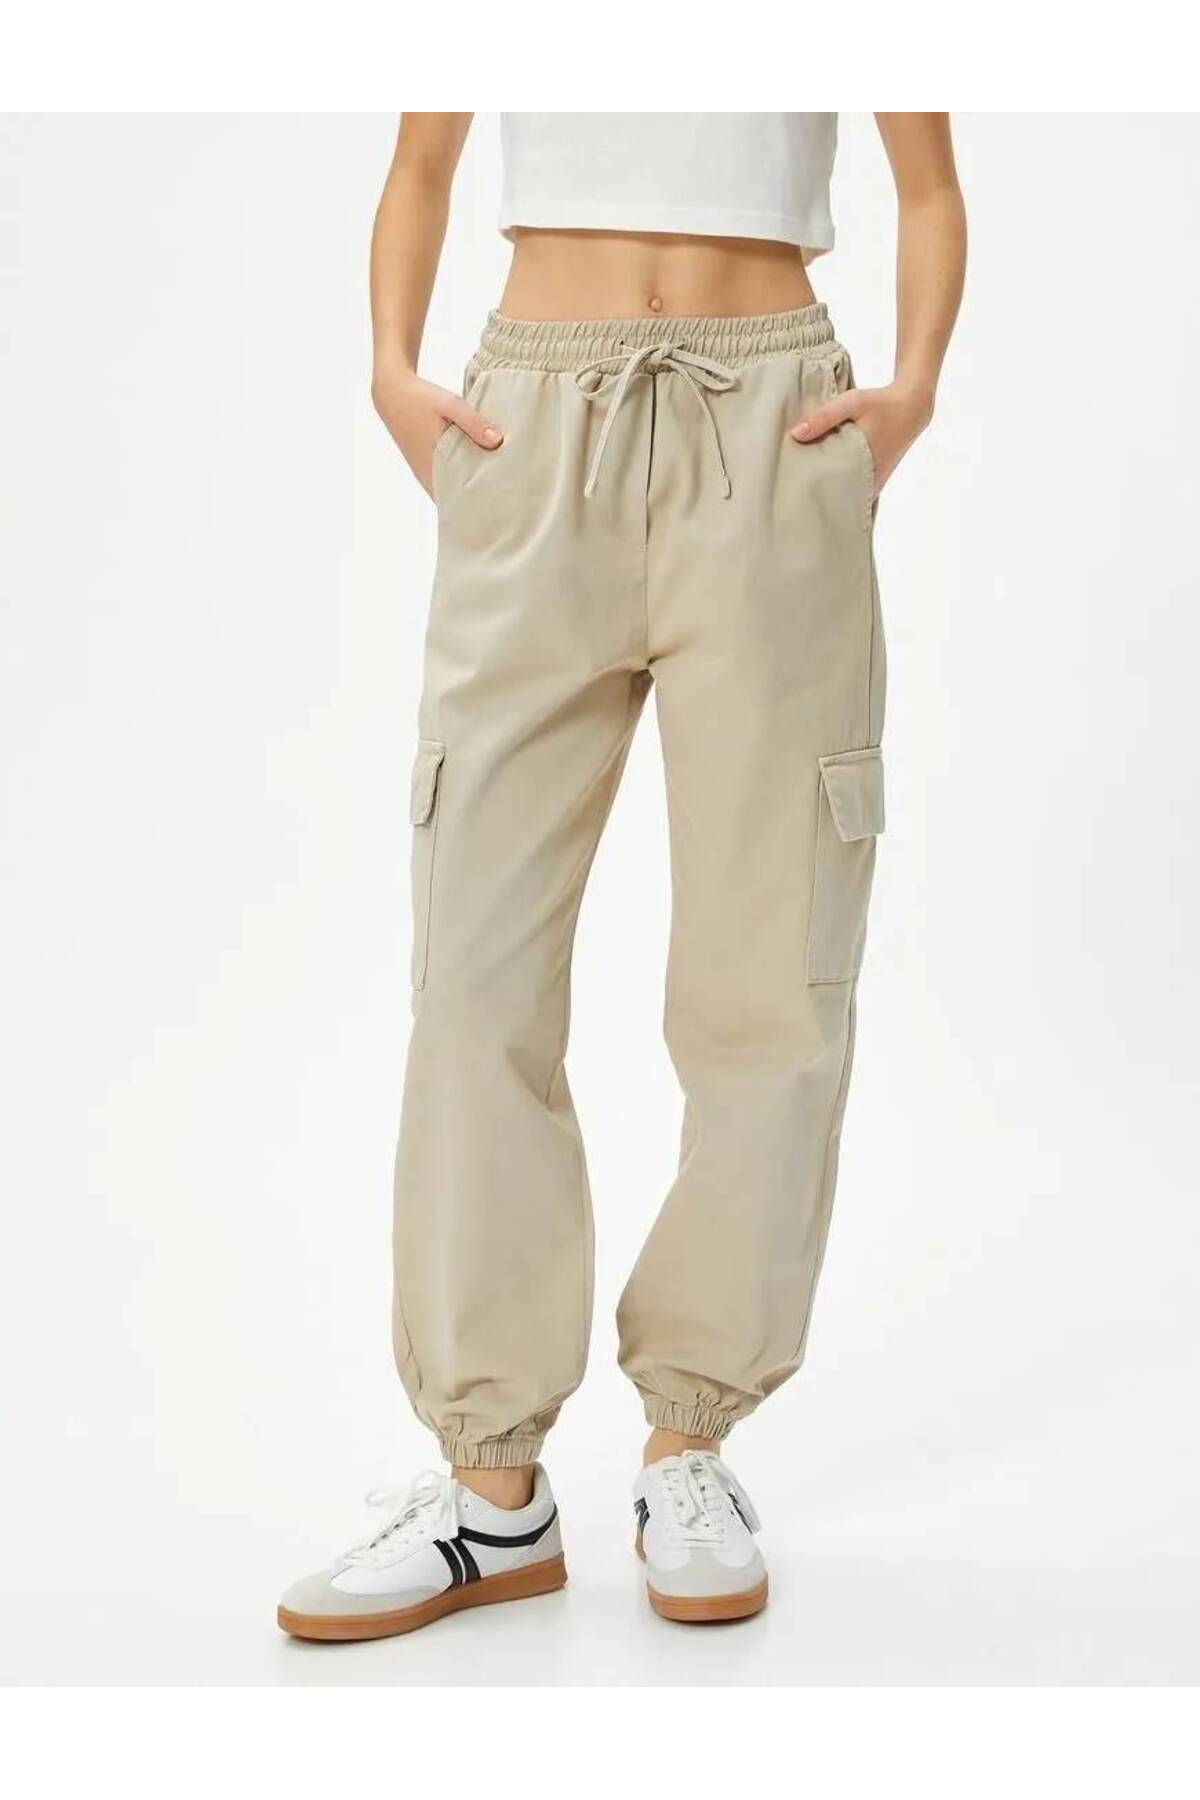 Levně Koton Cargo Jogger Trousers Comfortable Fit Elastic Waist Tie Pocket Cotton